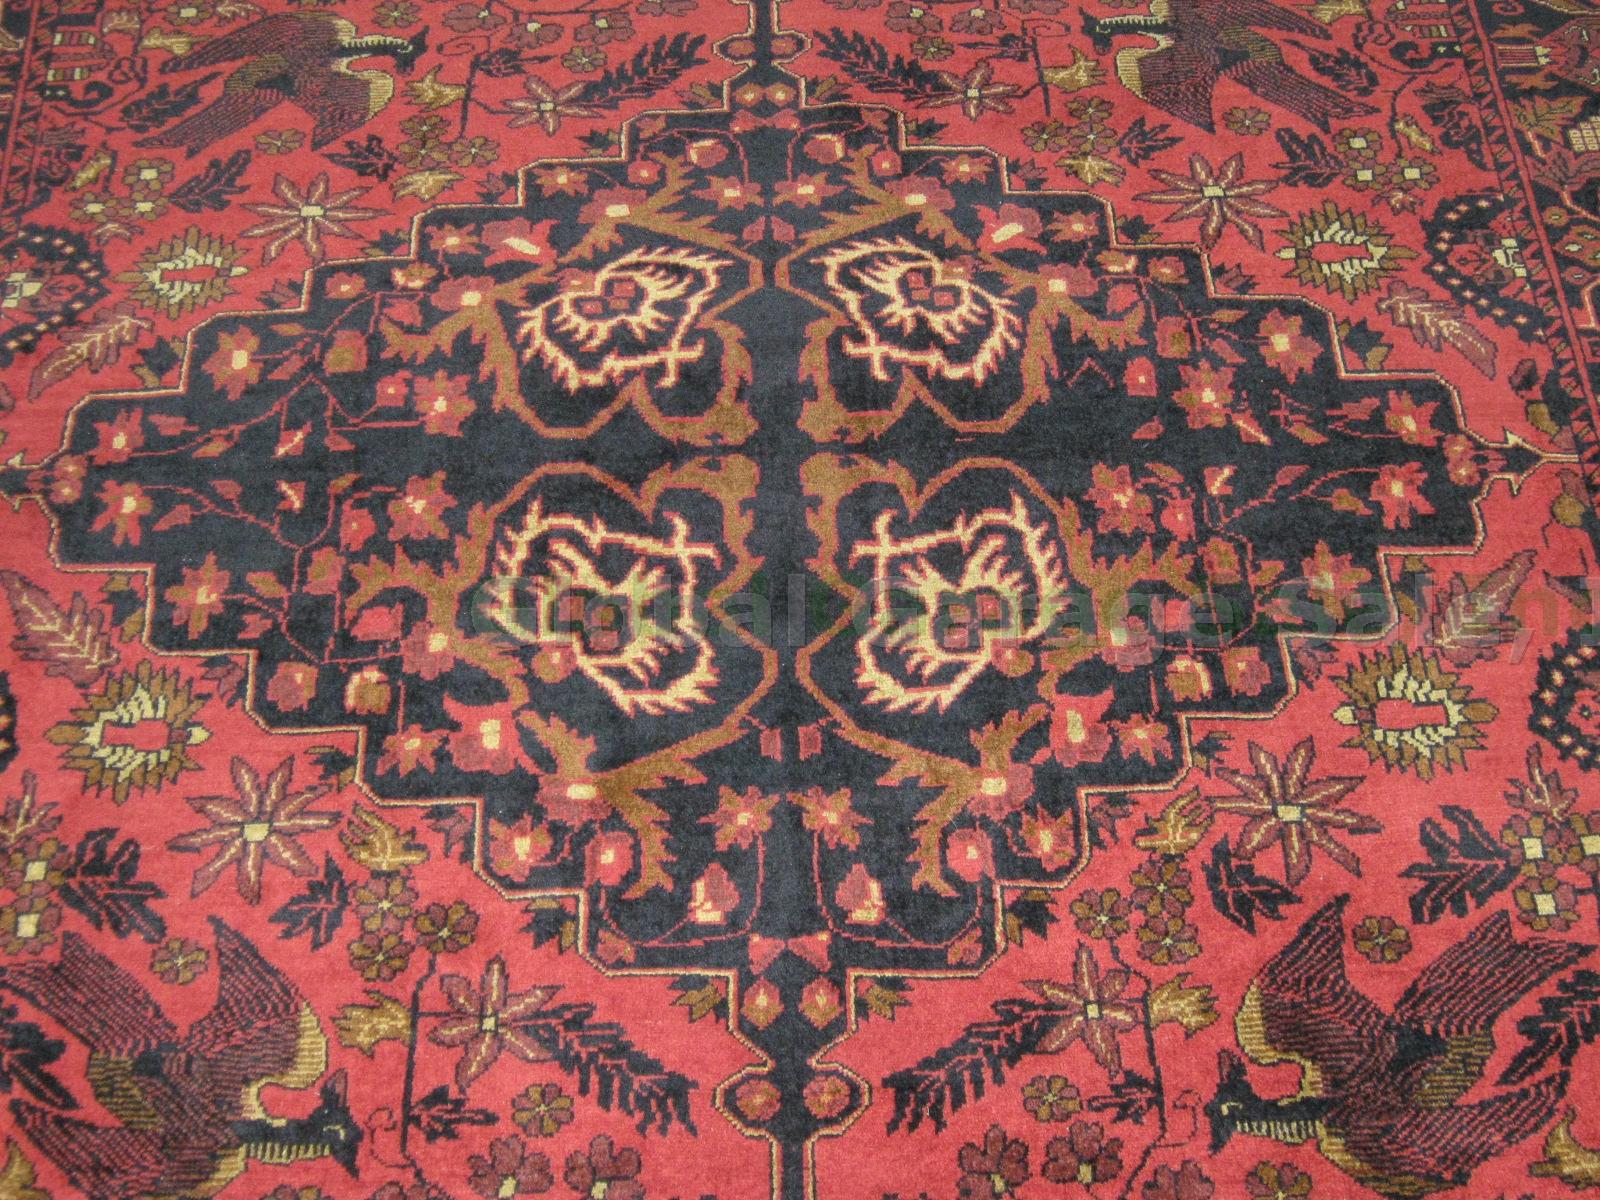 Vintage Afghan Persian Tribal Wool Carpet Area Rug 6